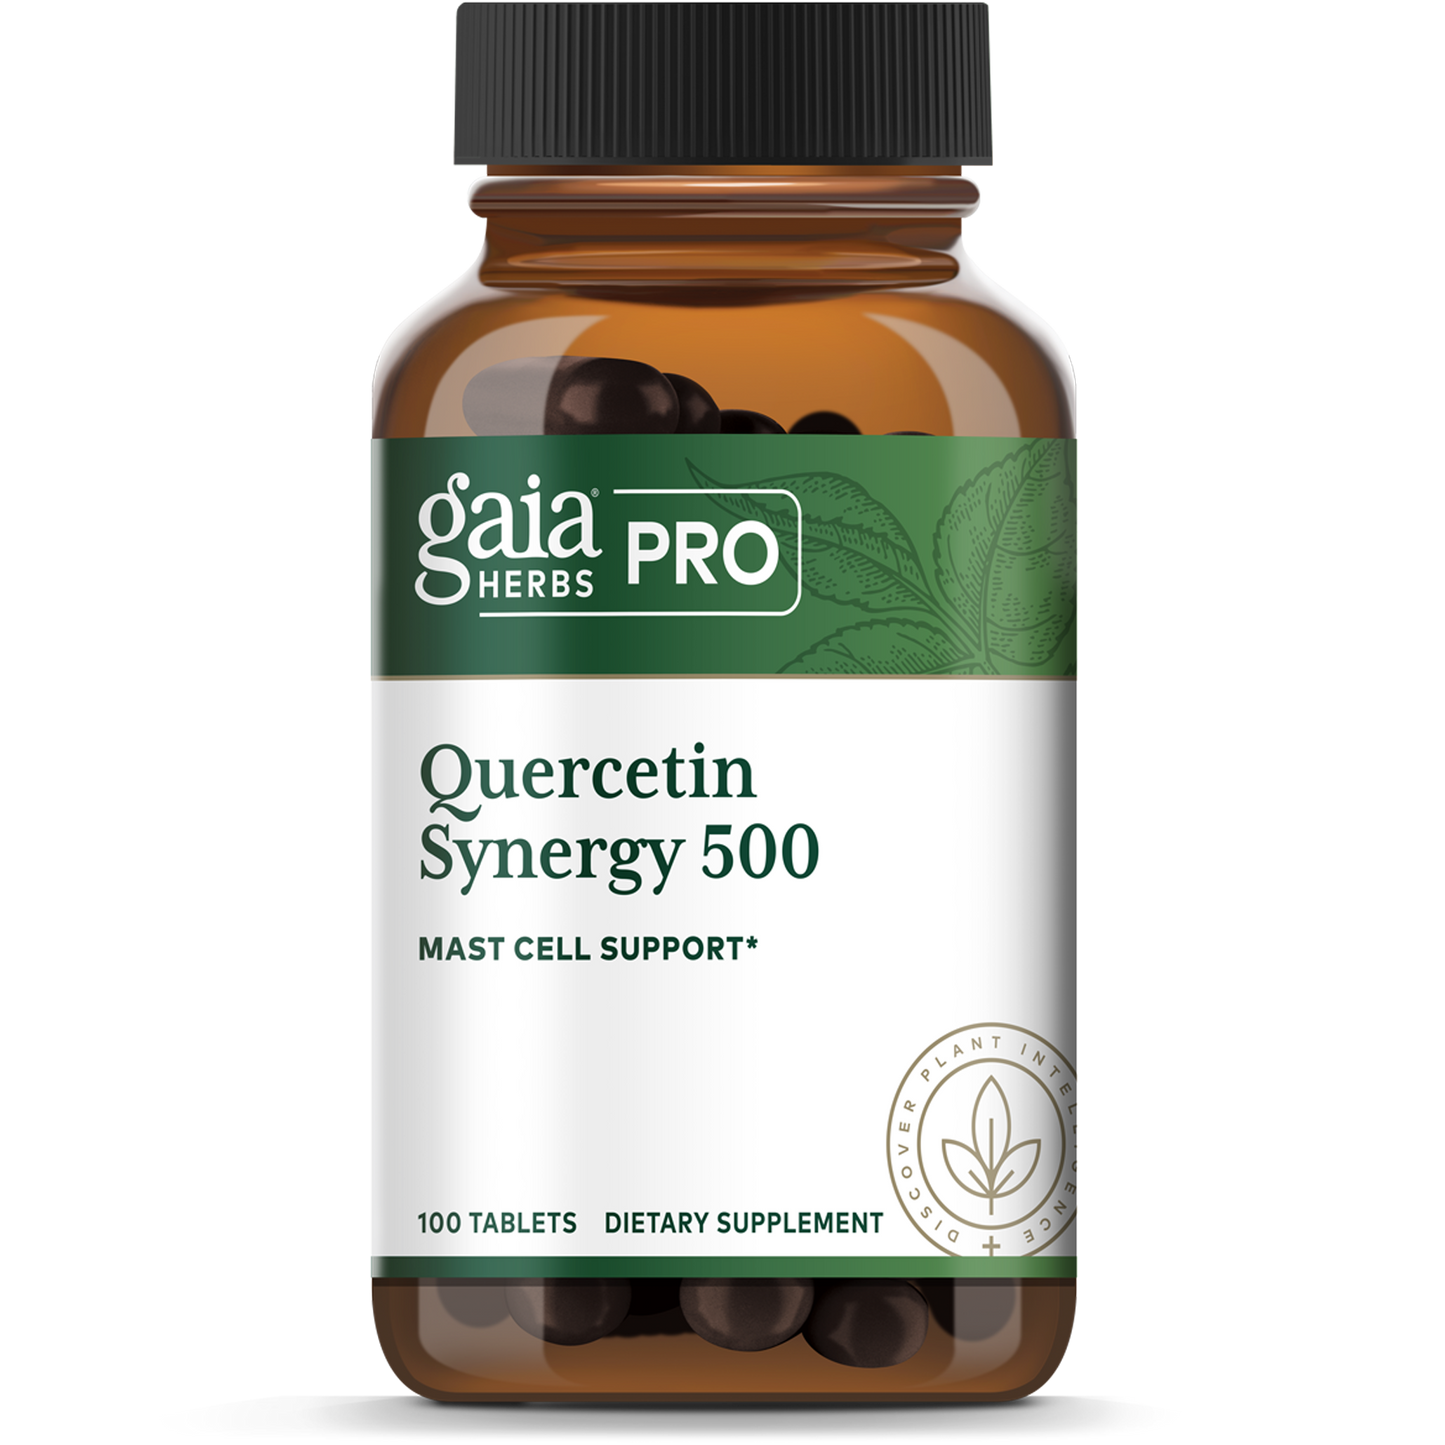 Quercetin Synergy 500